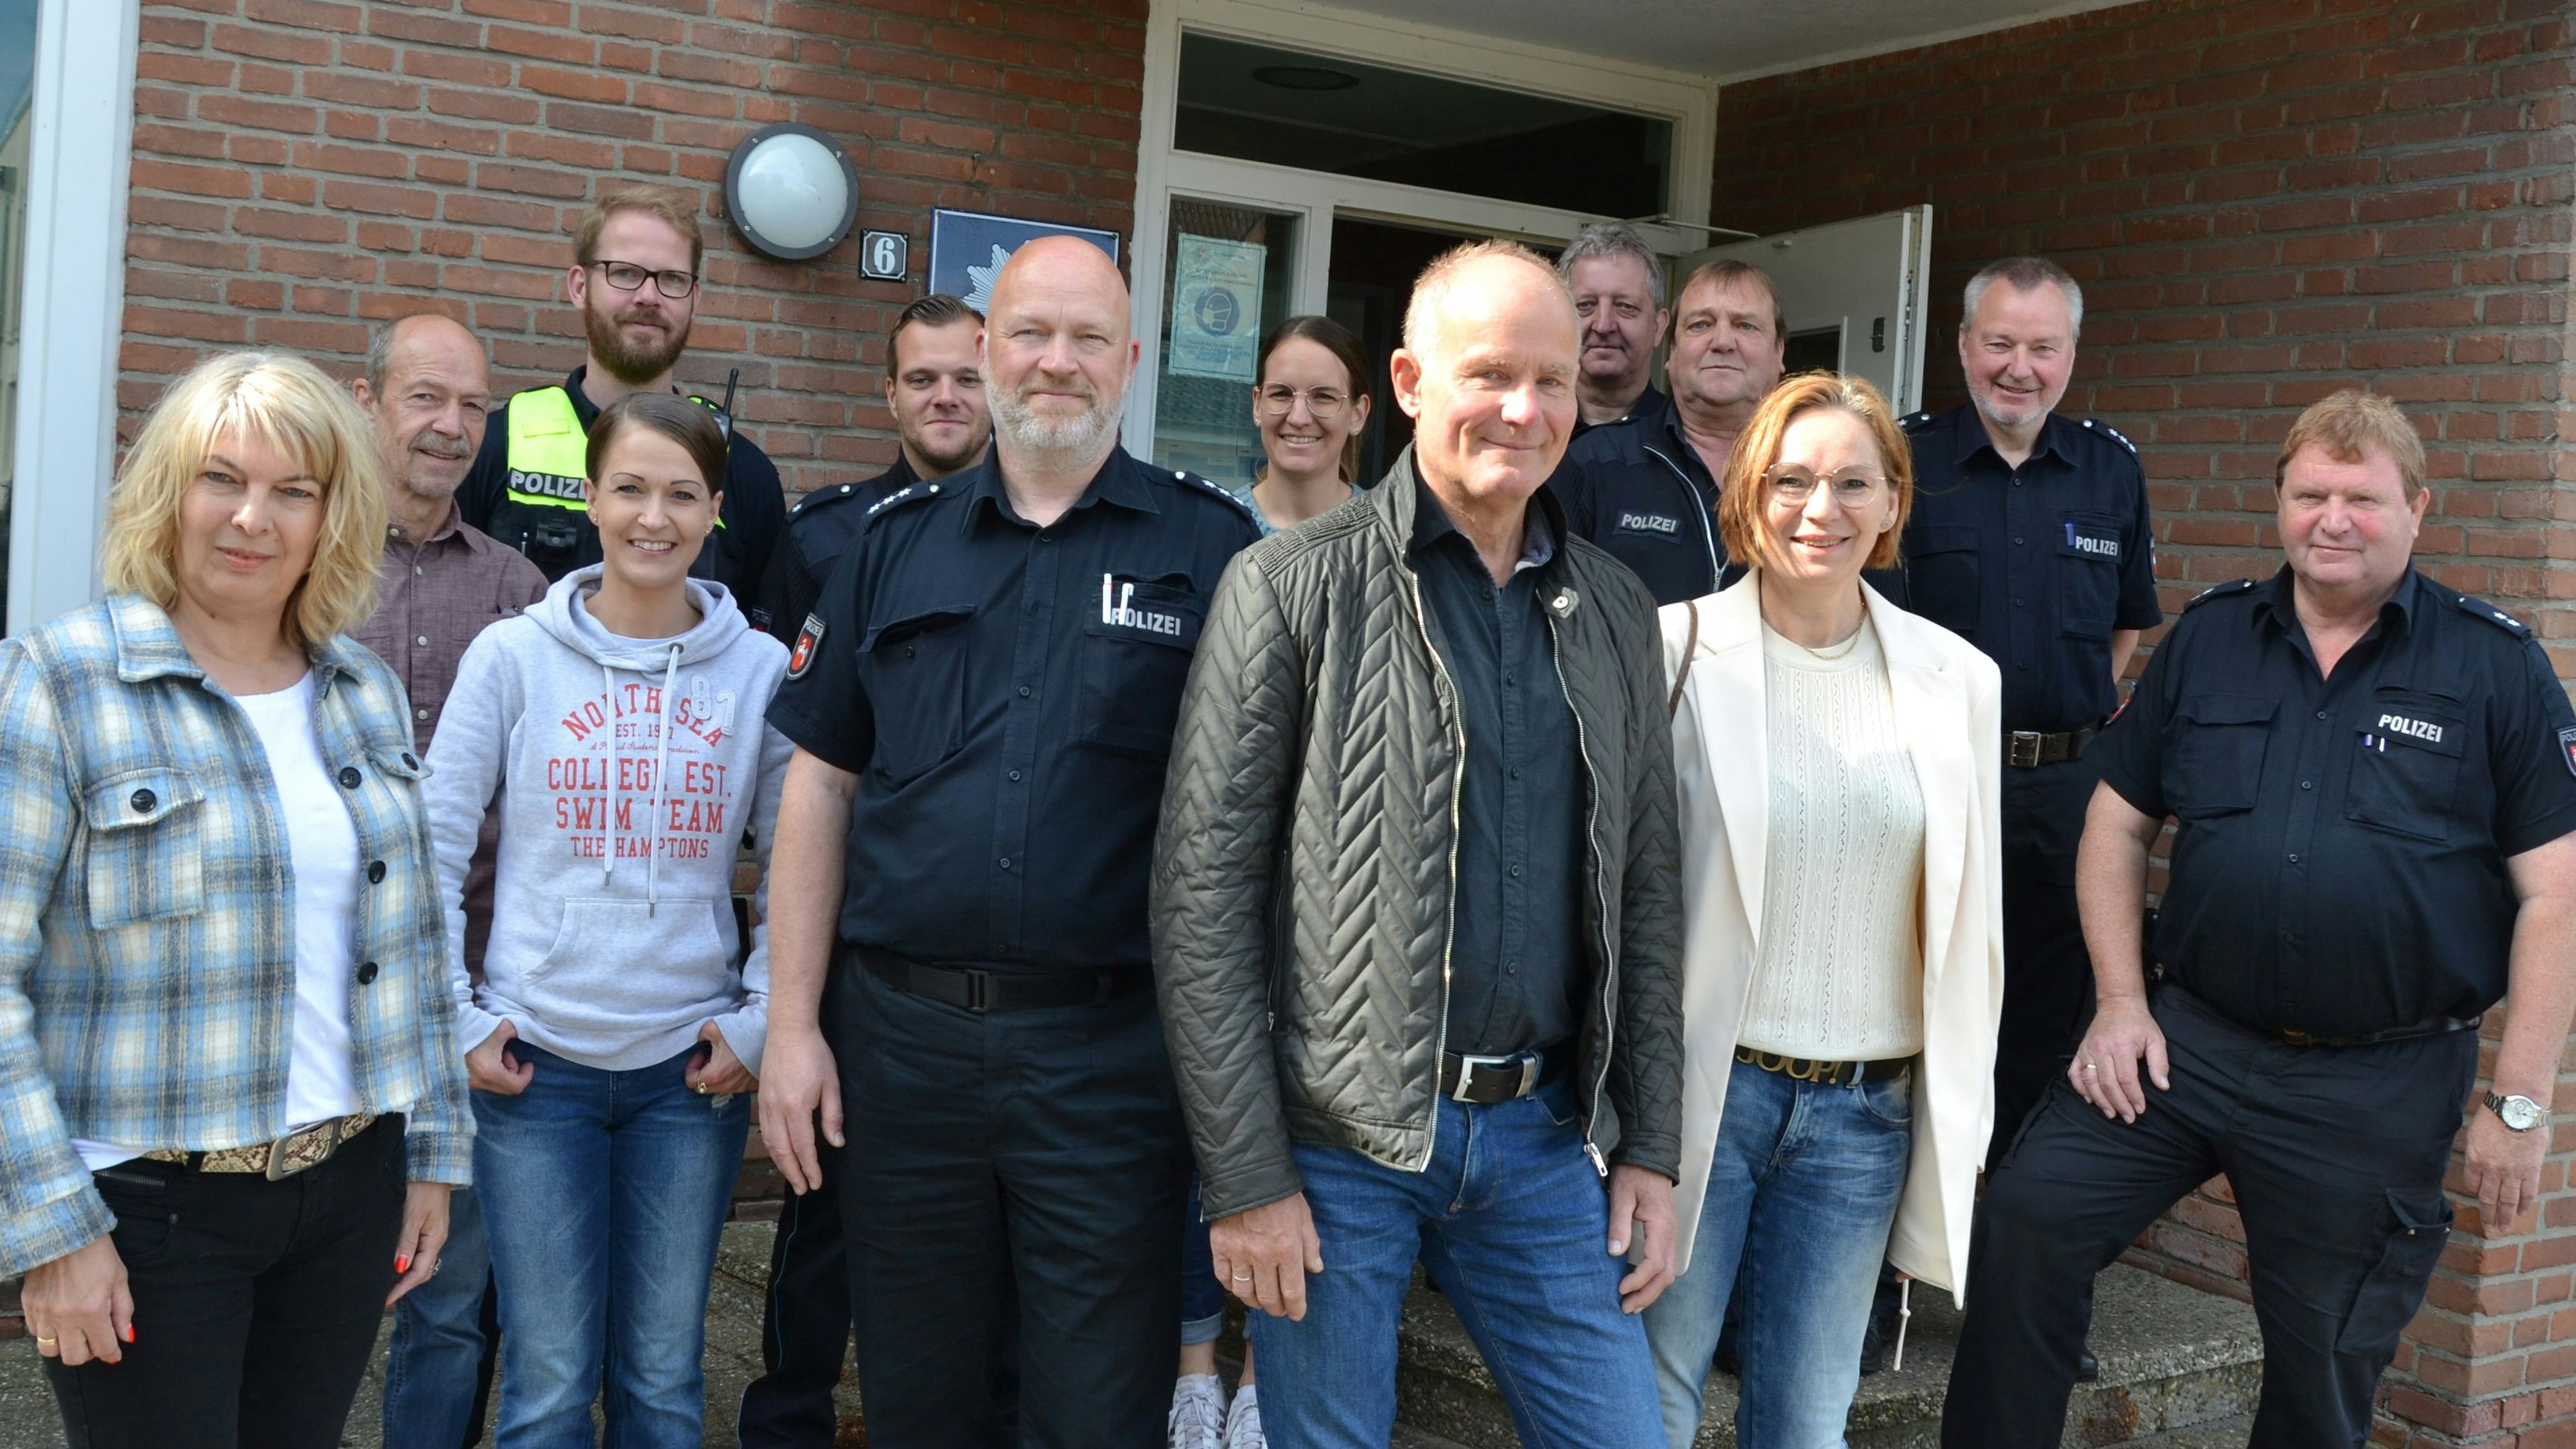 Abschied im Kollegenkreis: Dietmar Robbers (6. von rechts) tritt in den Ruhestand.&nbsp; &nbsp;Foto: G. Meyer